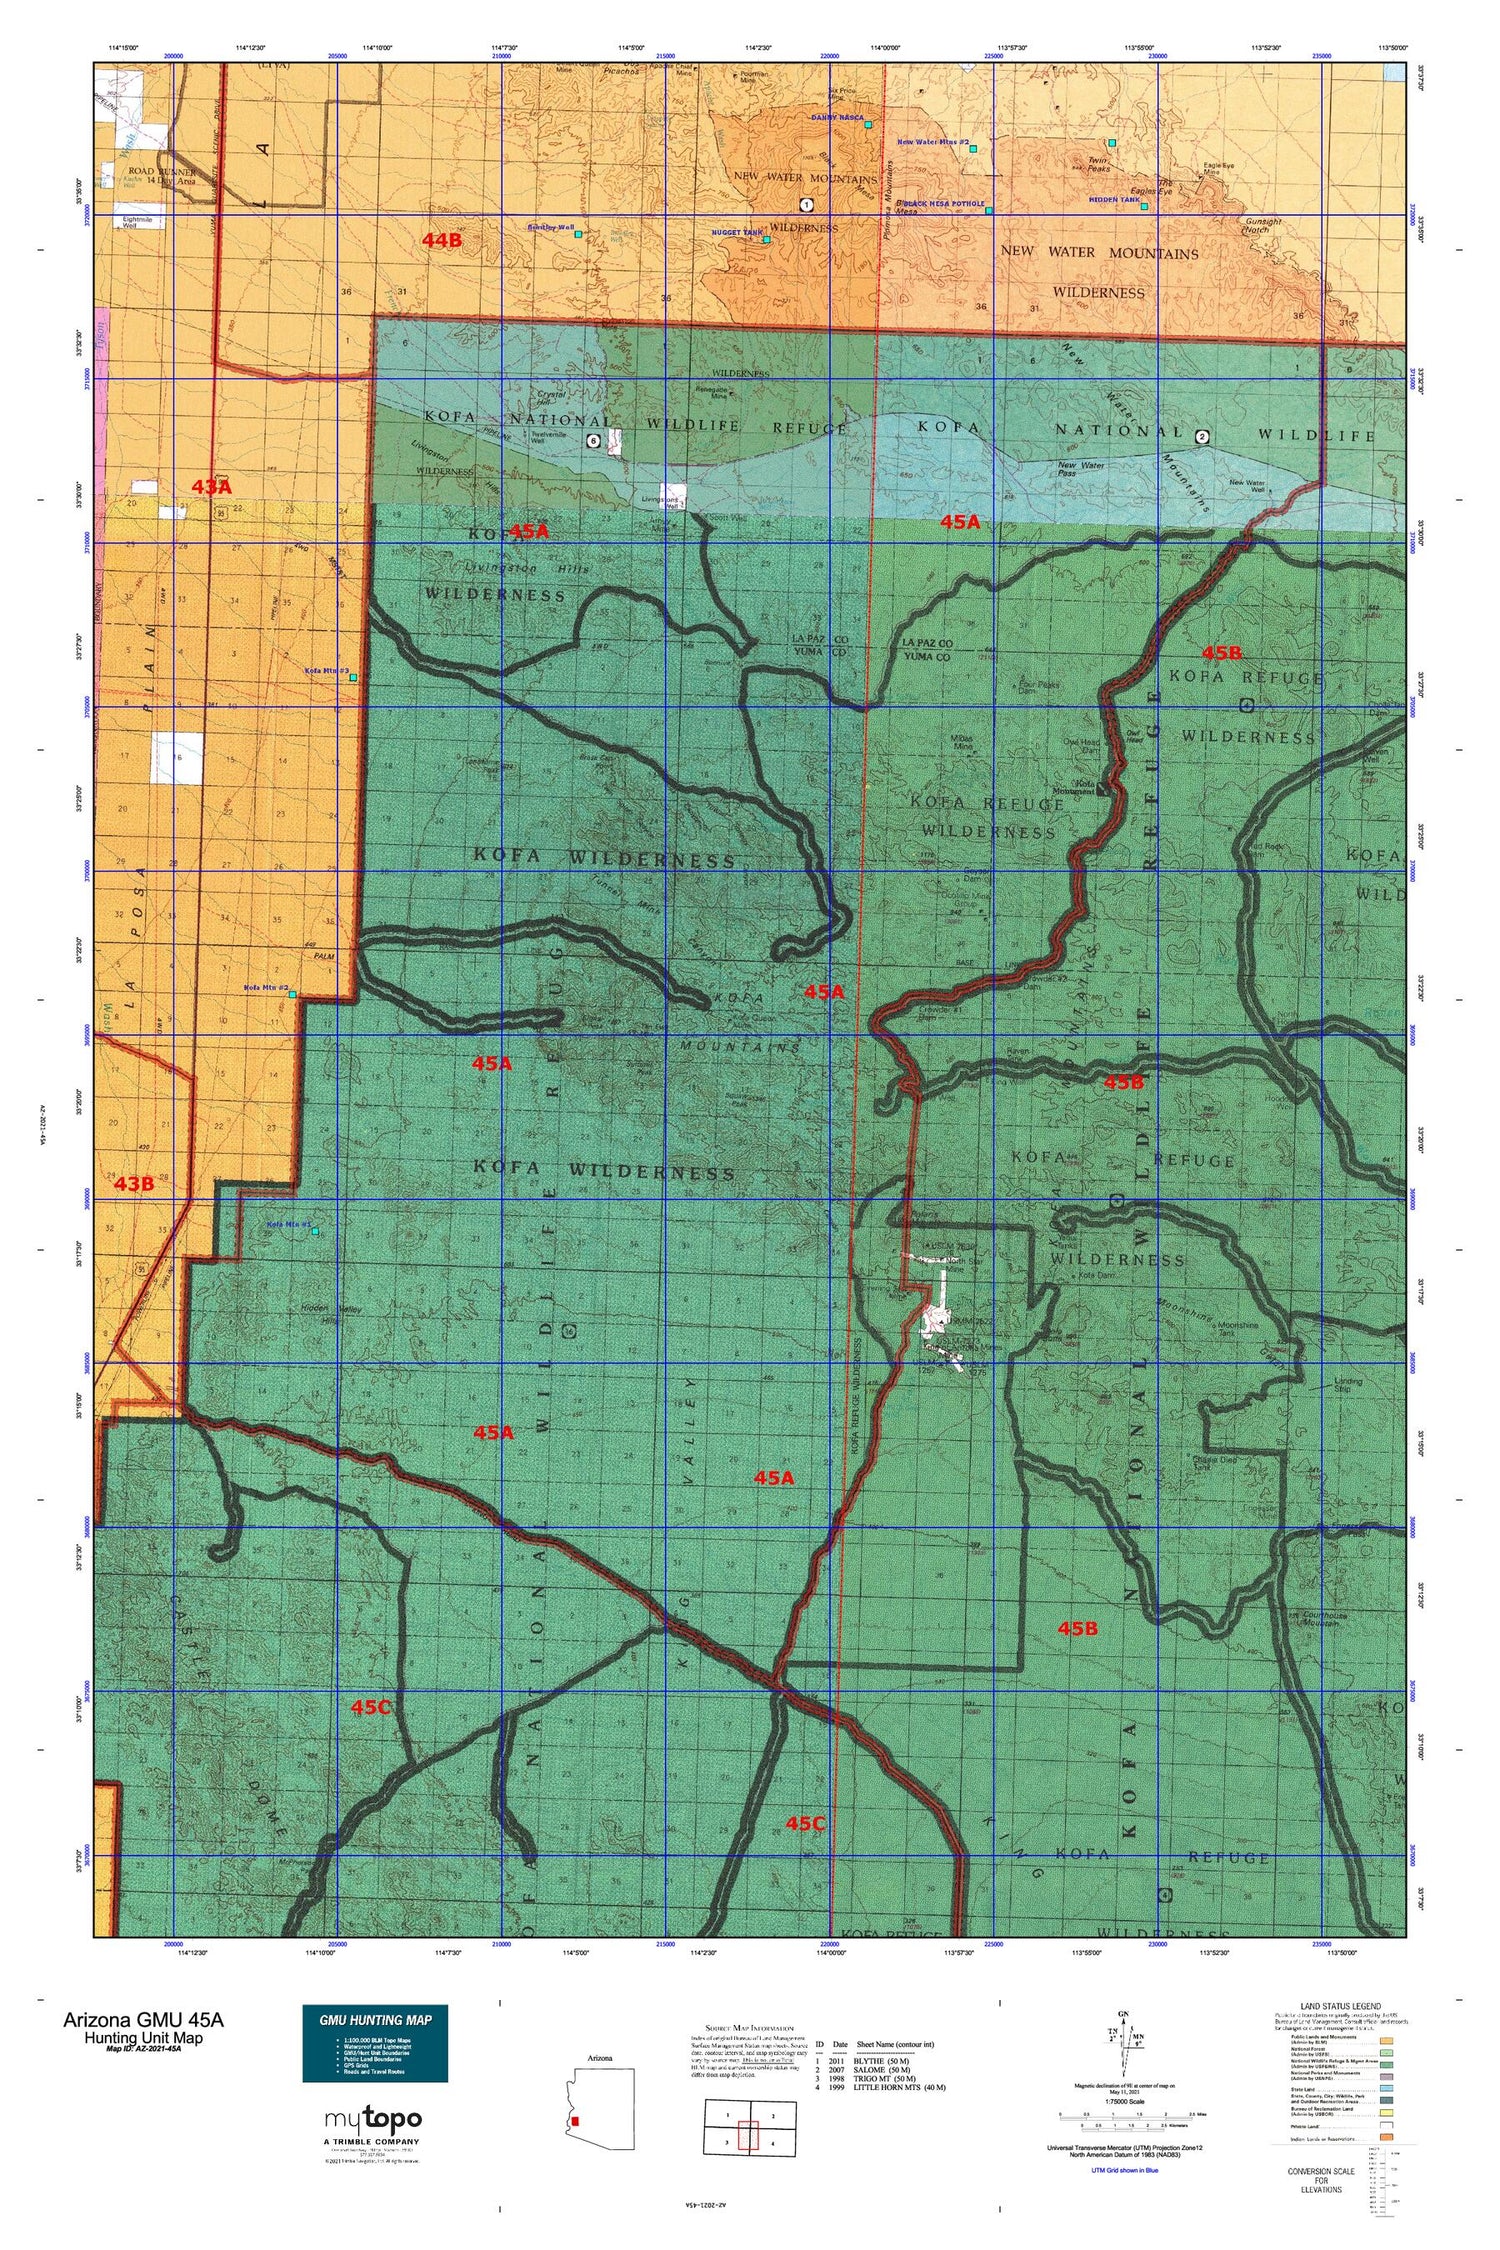 Arizona GMU 45A Map Image